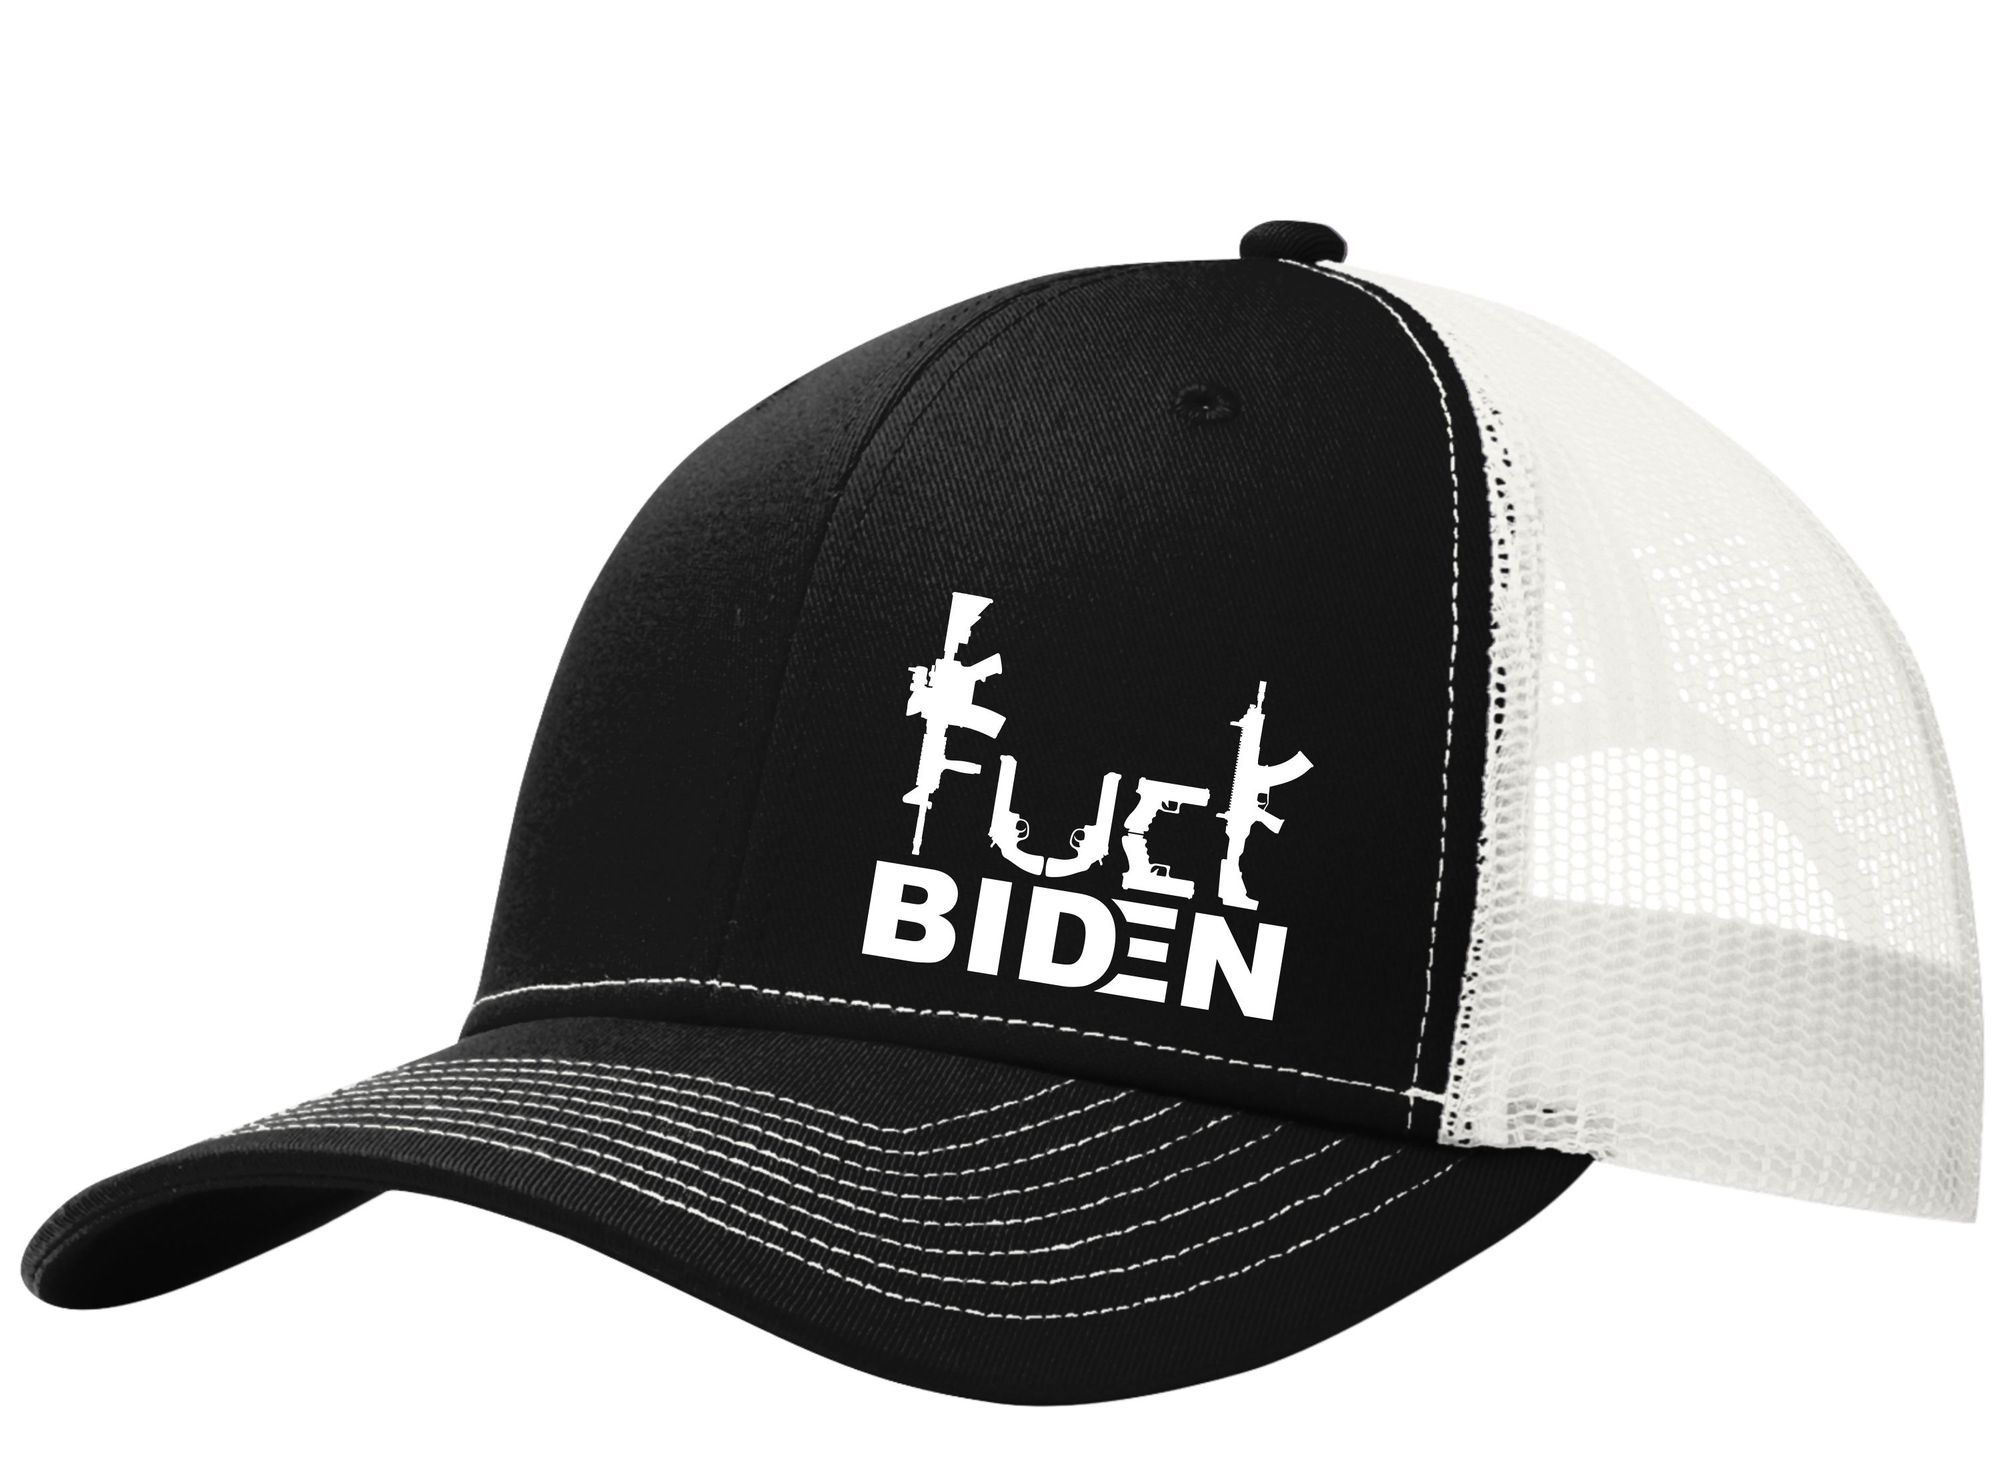 Guns Fuck Biden trucker cap 2